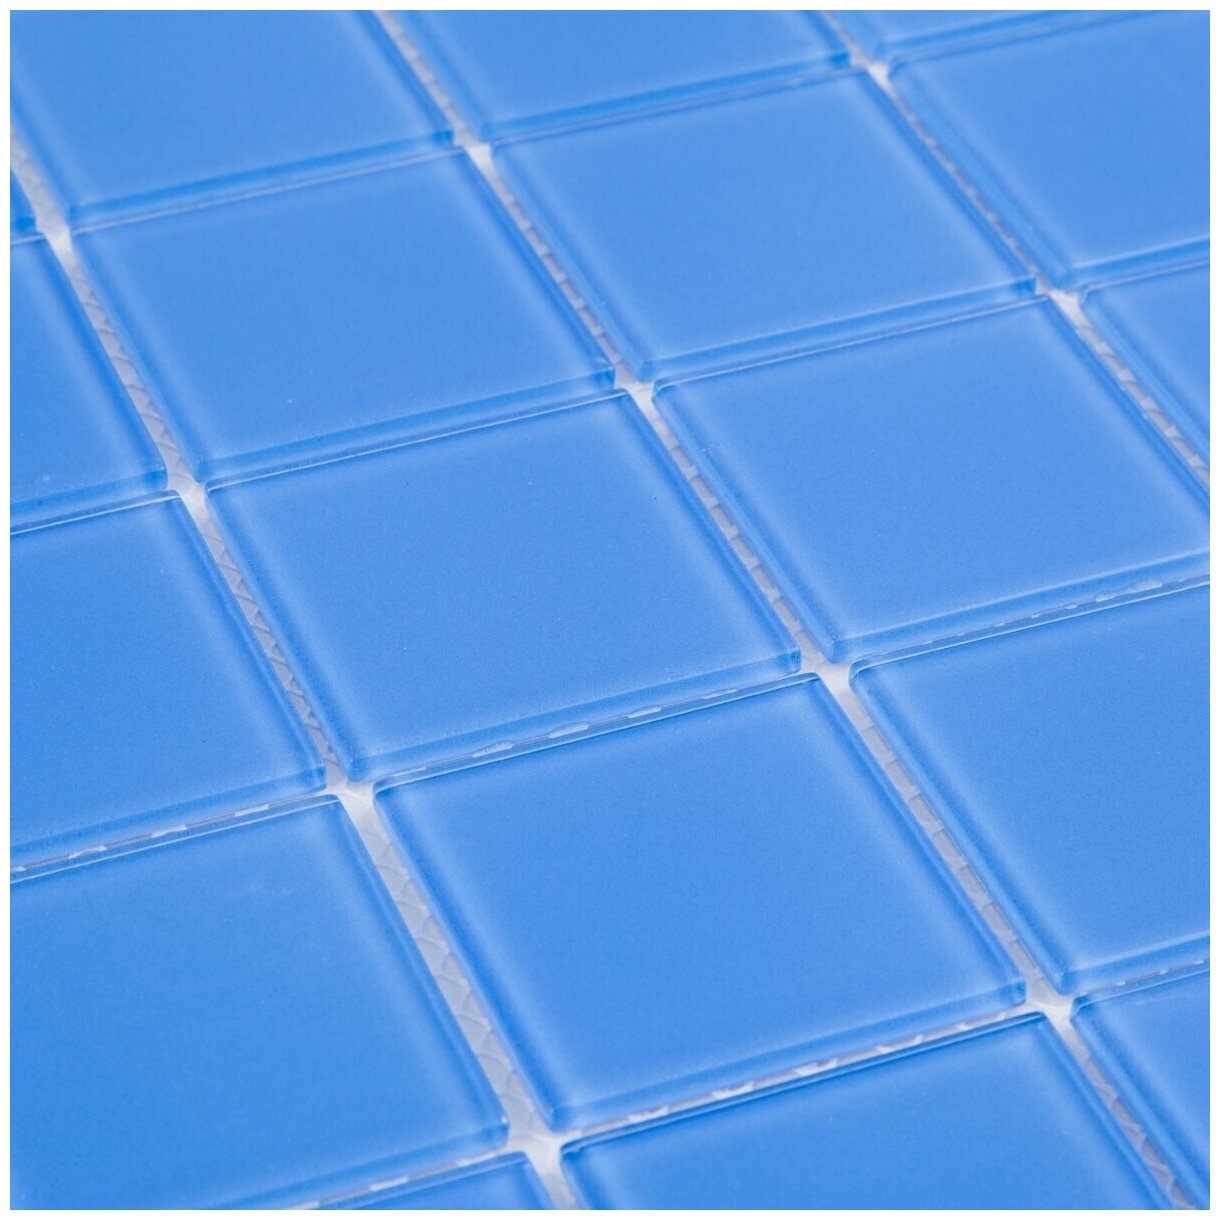 Стеклянная мозаика DAO-105-48-4. Размер 300х300мм. Толщина 4мм. Цвет синий/голубой. 1 лист. Площадь 0.09м2